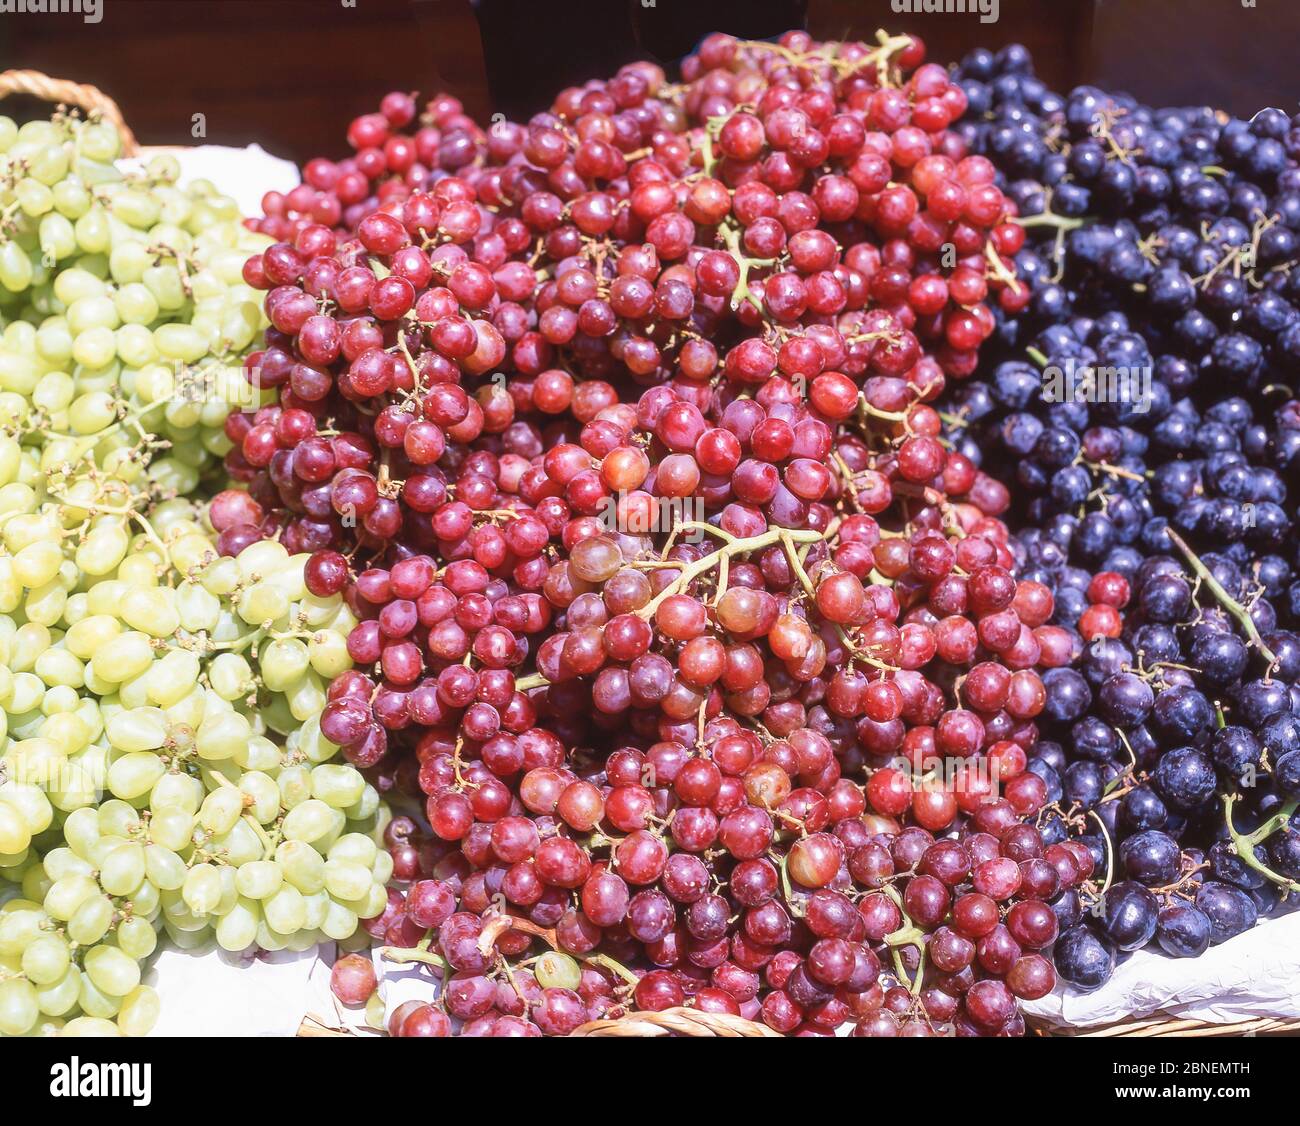 Des grappes de raisins sur le marché, Berwick Street Market, Soho, West End, City of Westminster, Greater London, Angleterre, Royaume-Uni Banque D'Images